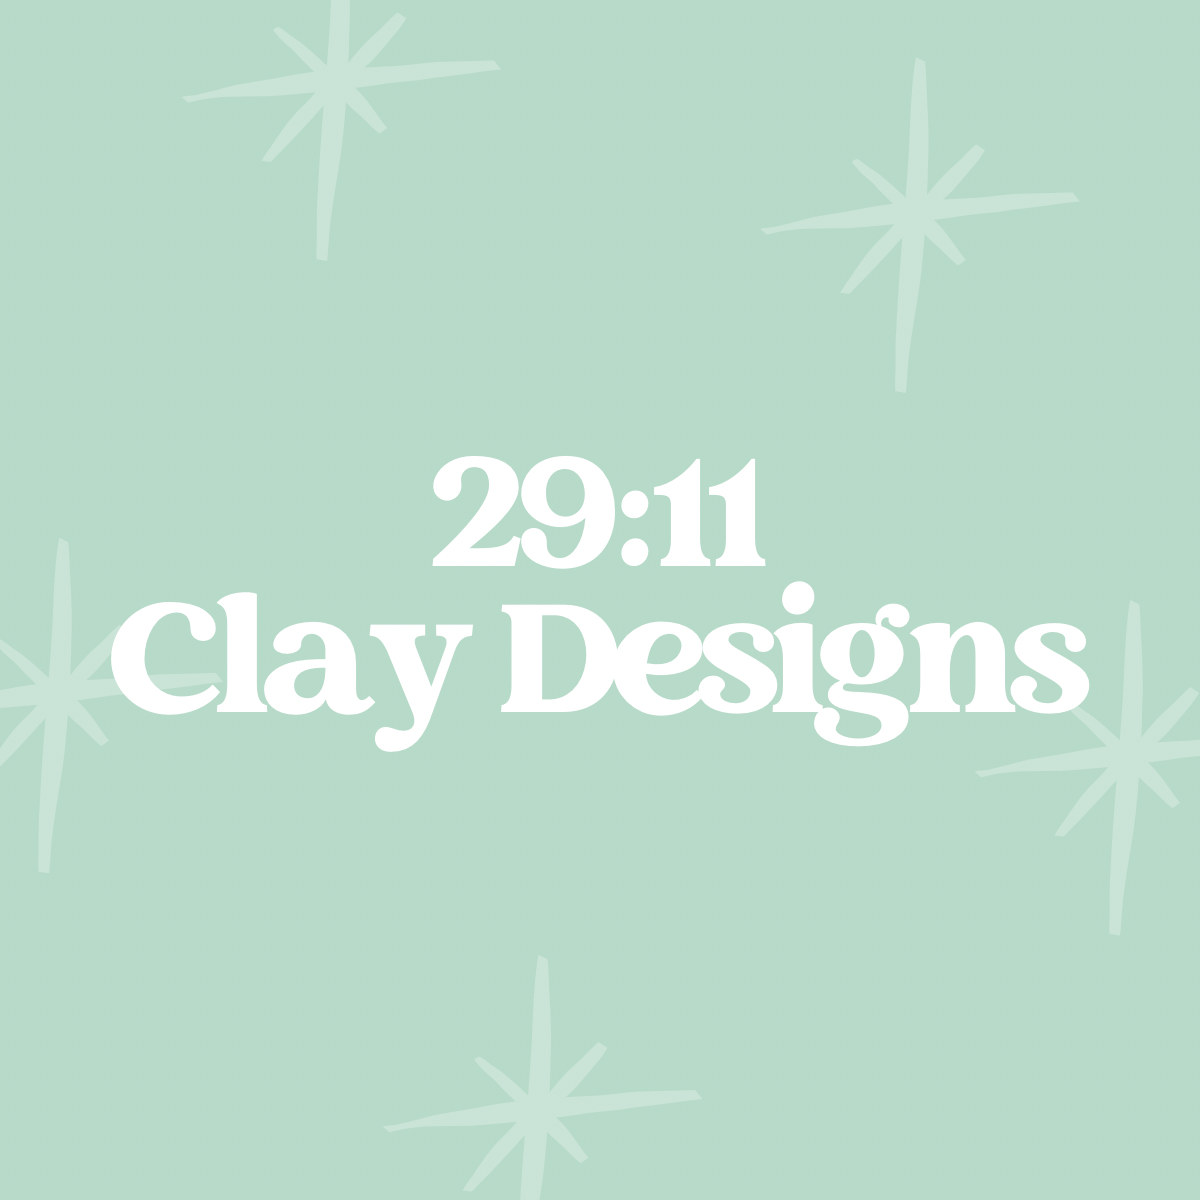 29:11 Clay Designs